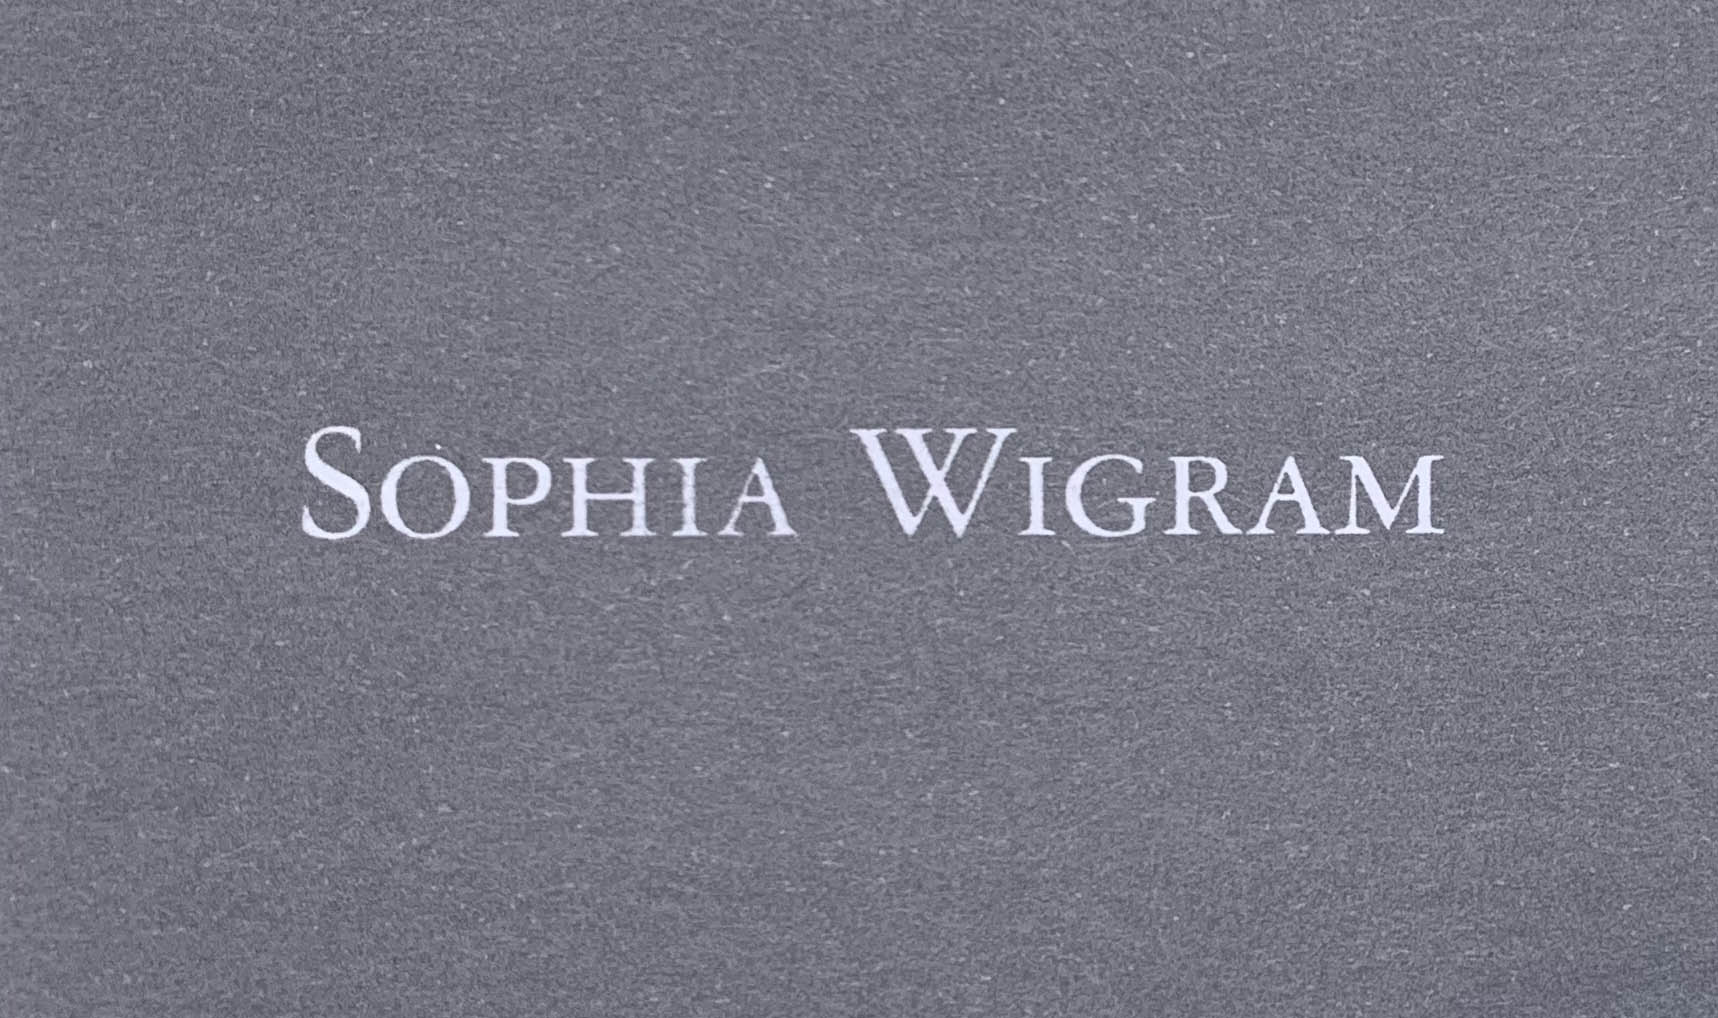 Sophia Wigram Designs